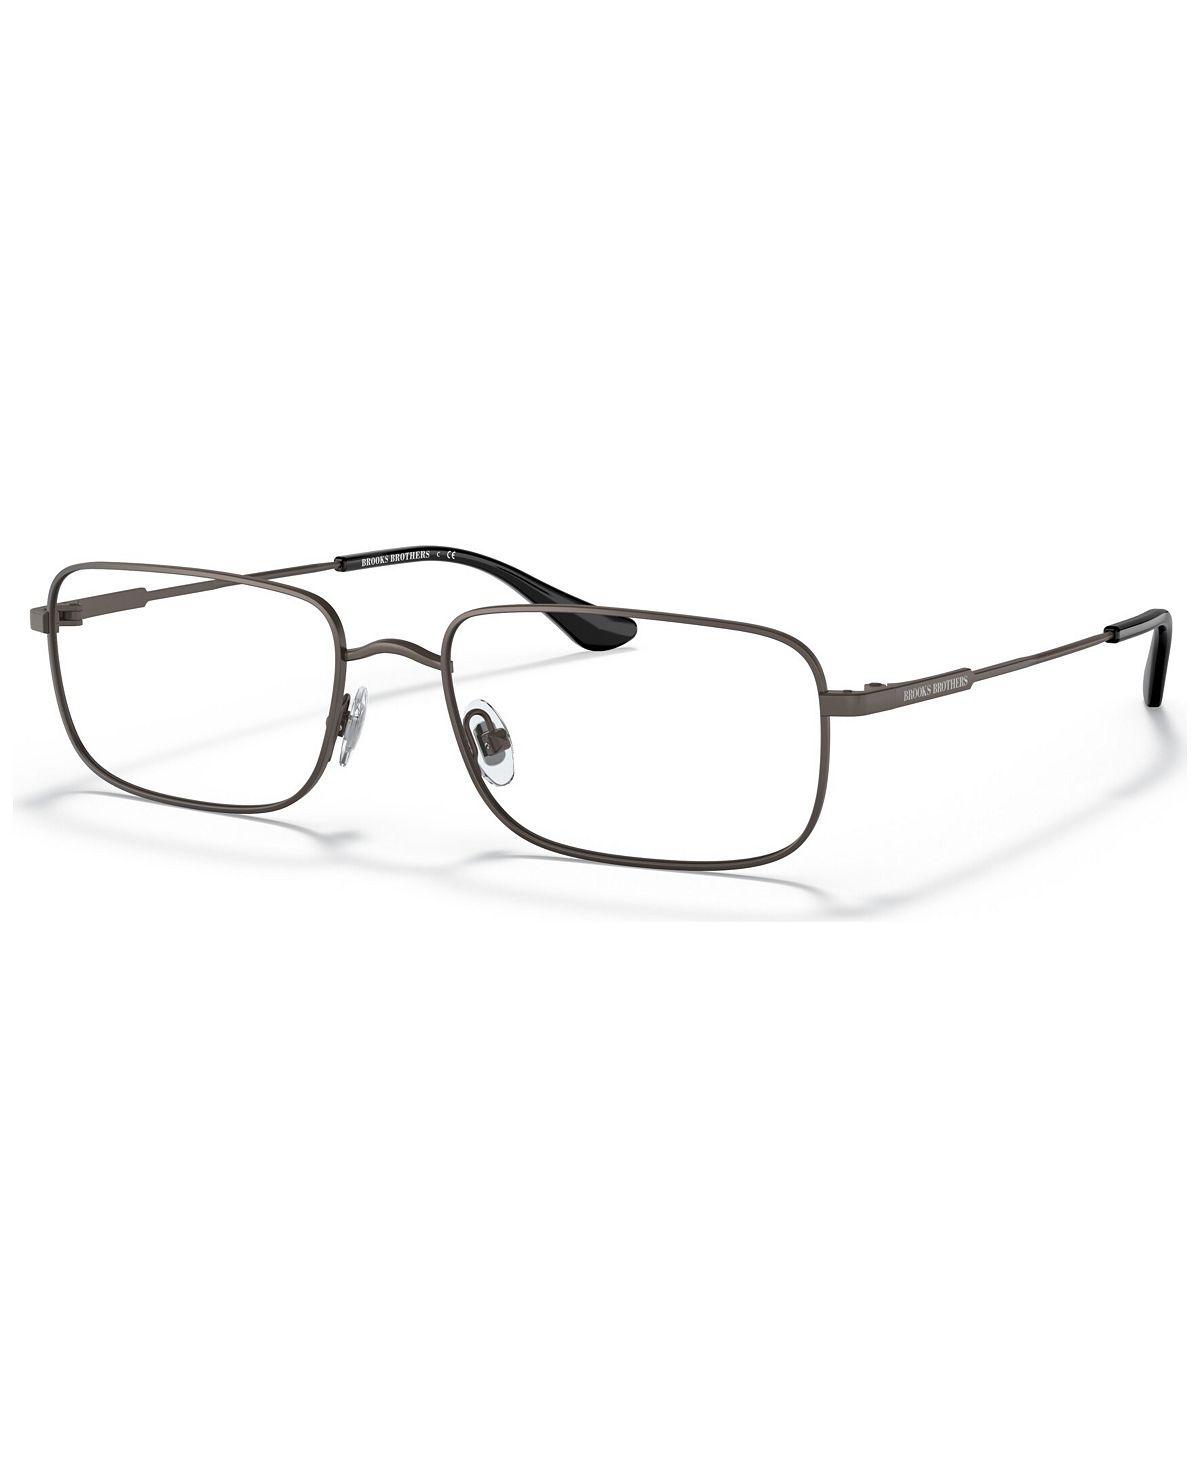 Мужские прямоугольные очки, BB109857-O Brooks Brothers зажигалка lotus 6720 fusion gunmetal matte